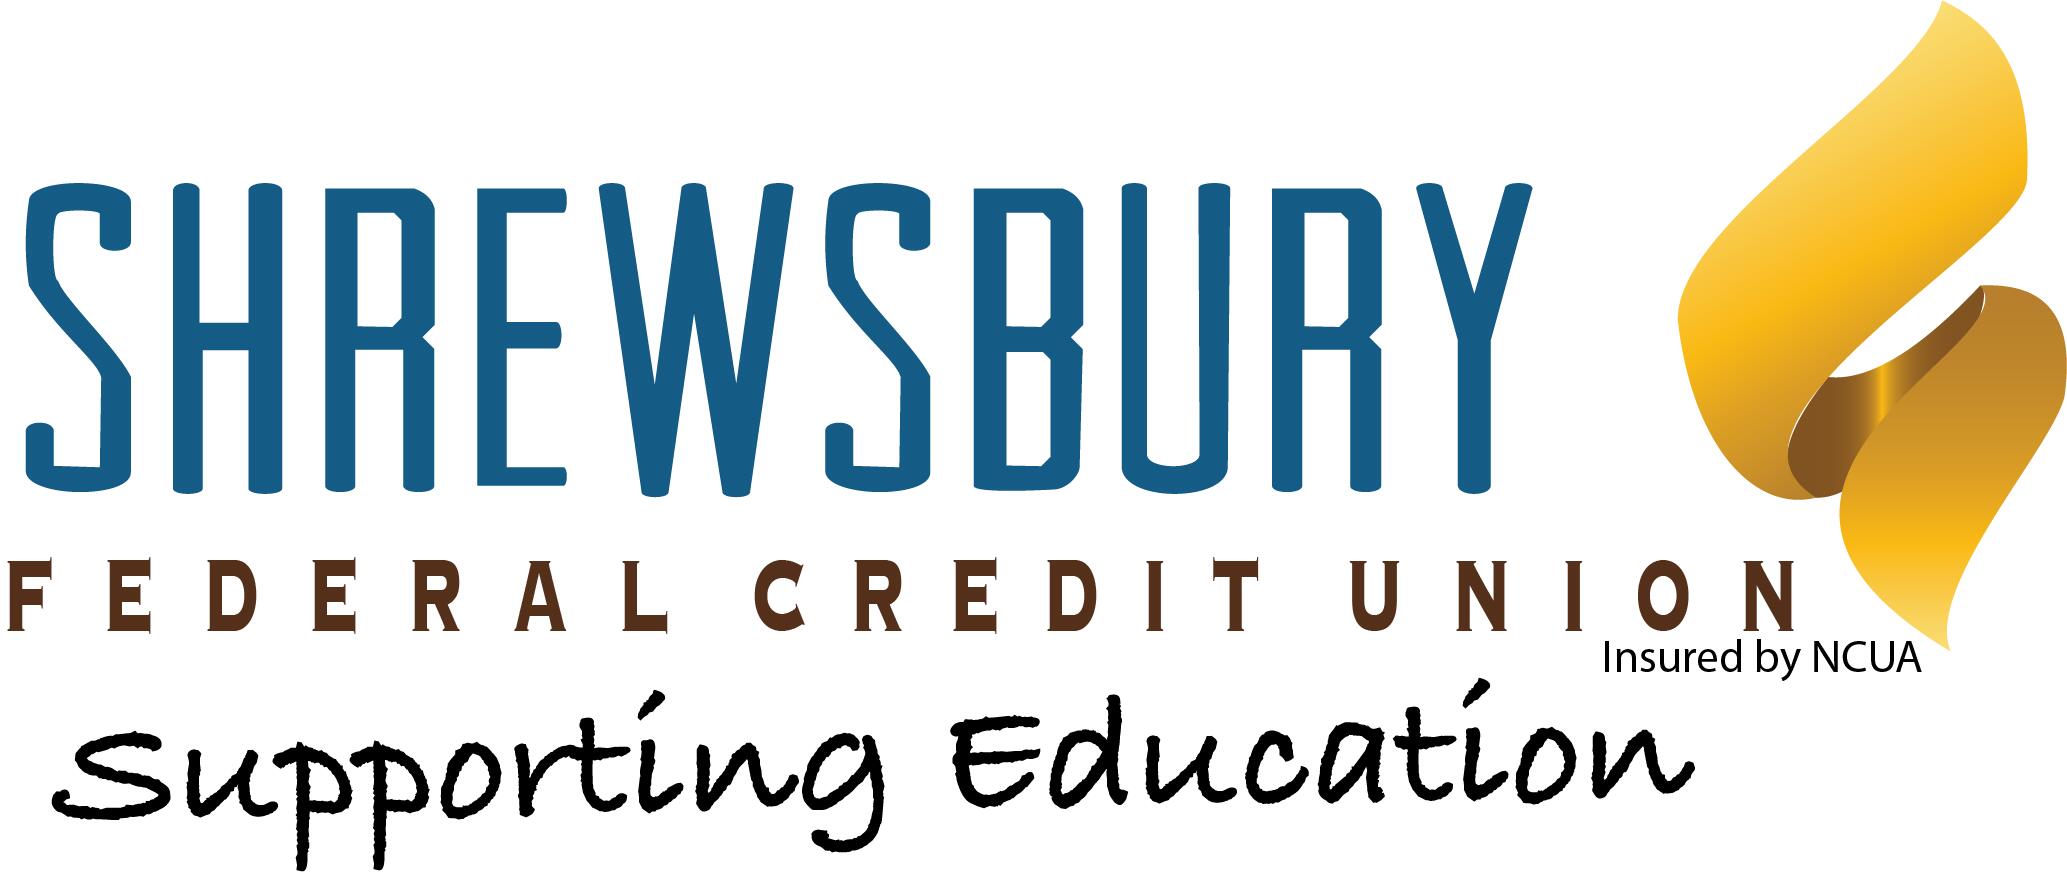 Shewsbury Federal Credit Union